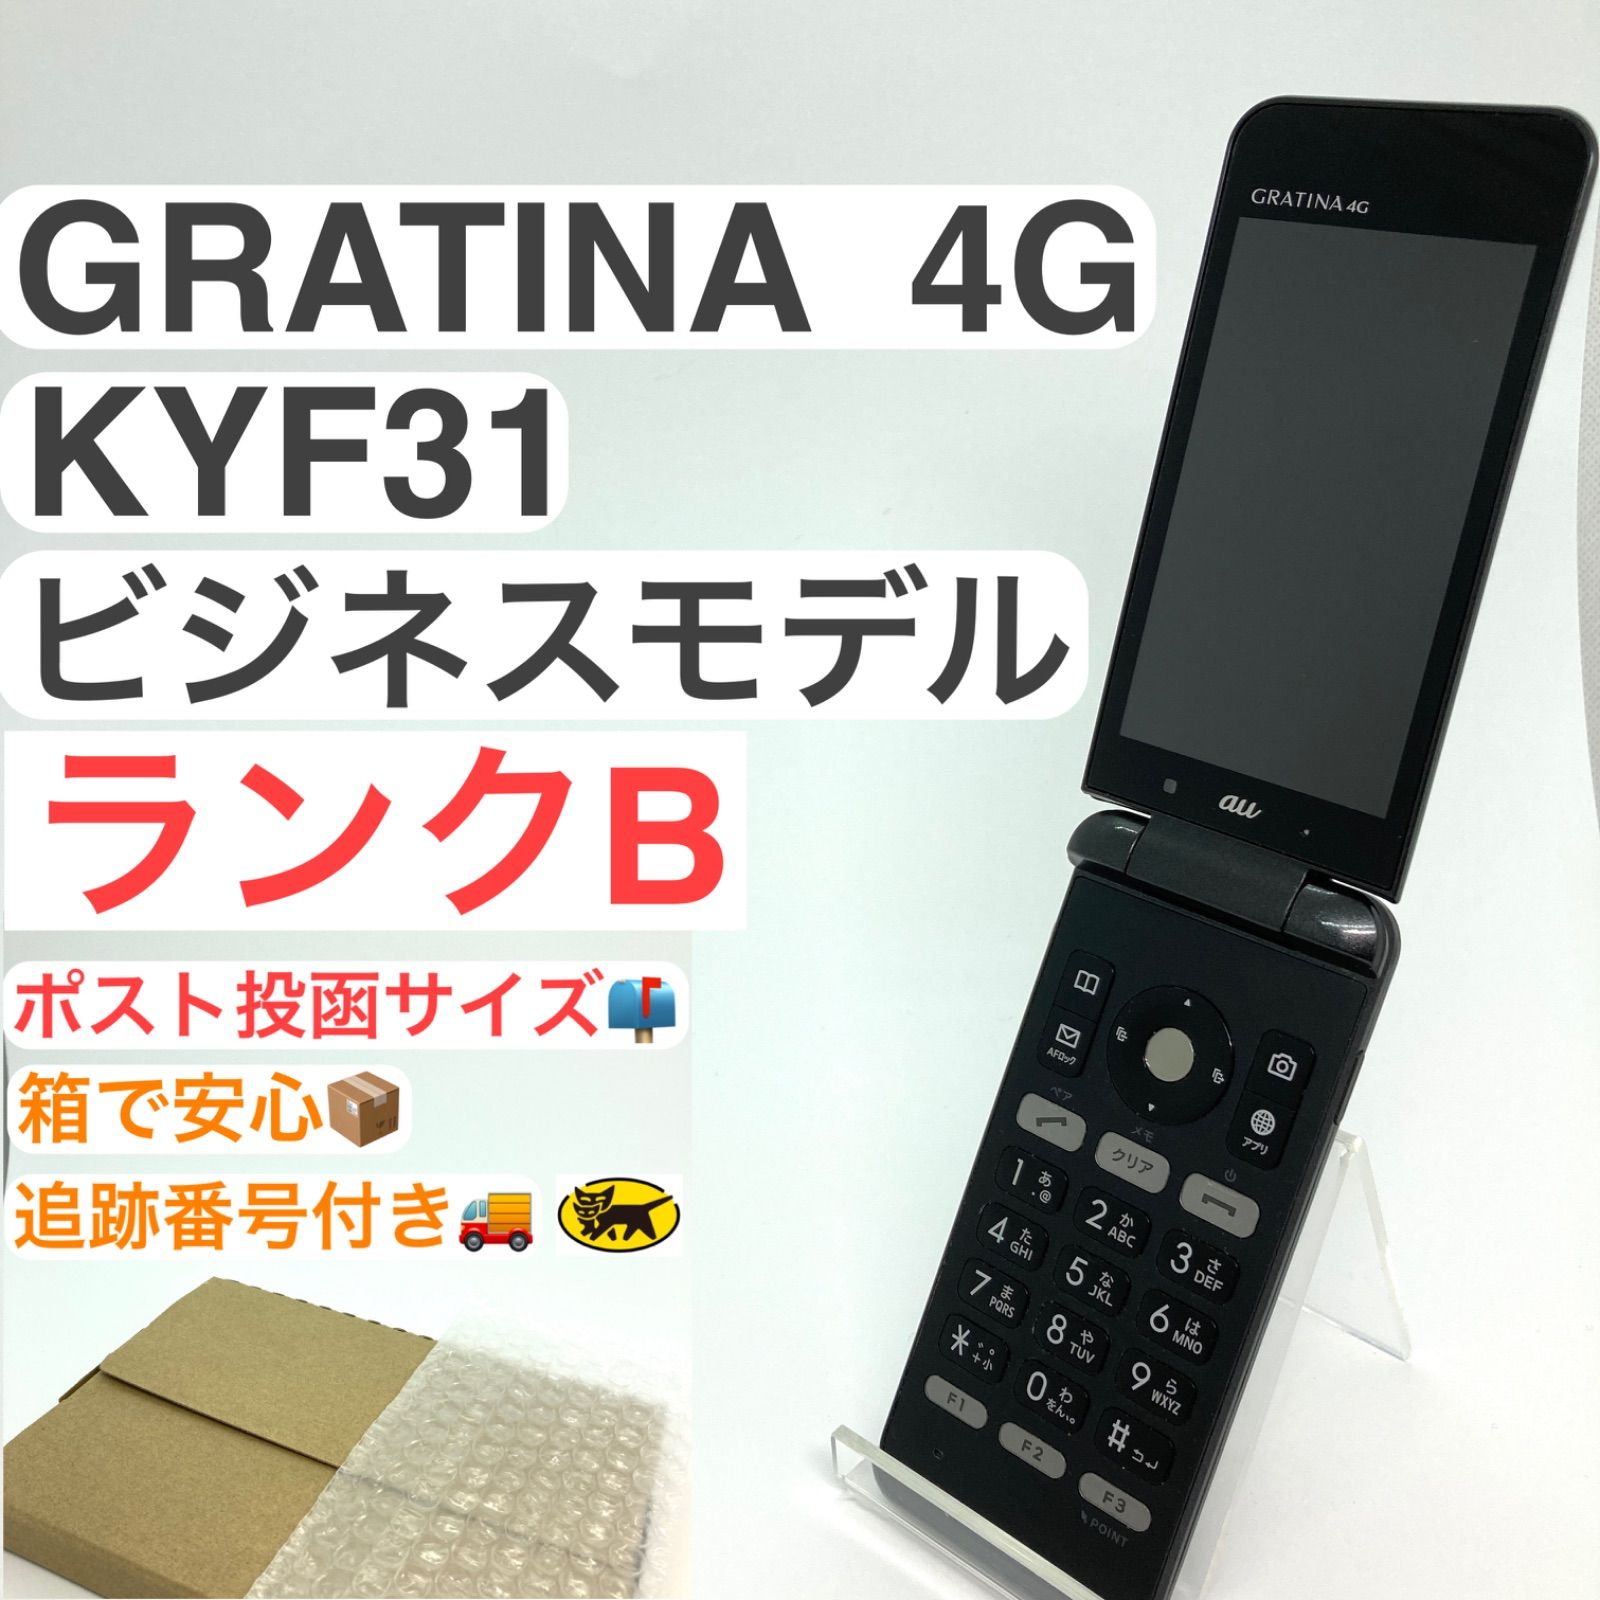 京セラ KYOCERA GRATINA 4G KYF31 ガラケー au - 携帯電話本体